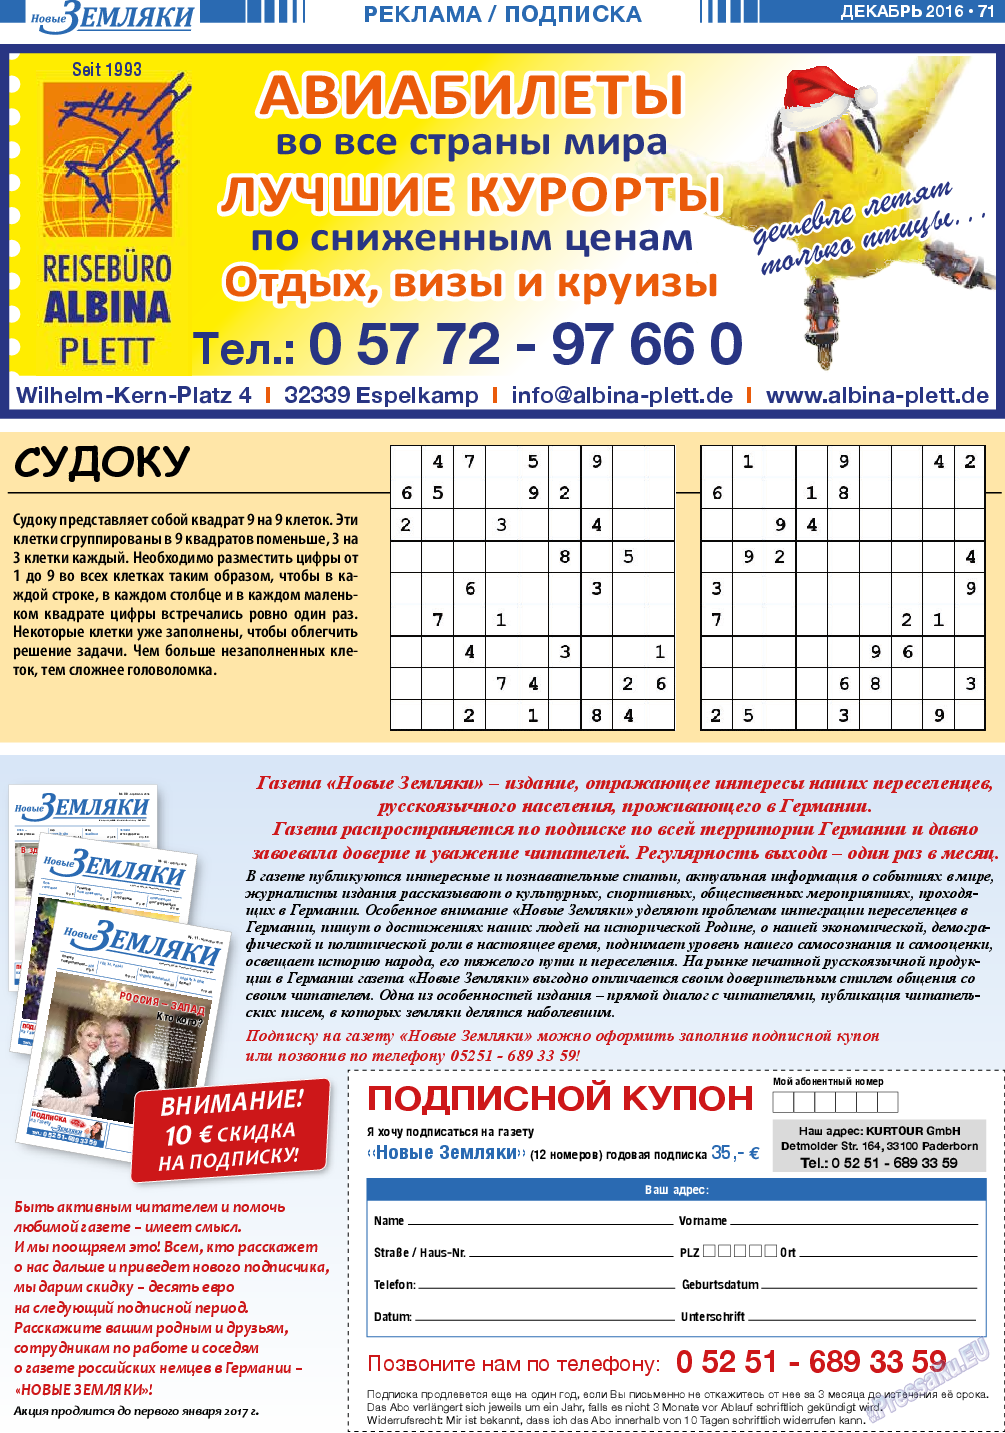 Новые Земляки, газета. 2016 №12 стр.71